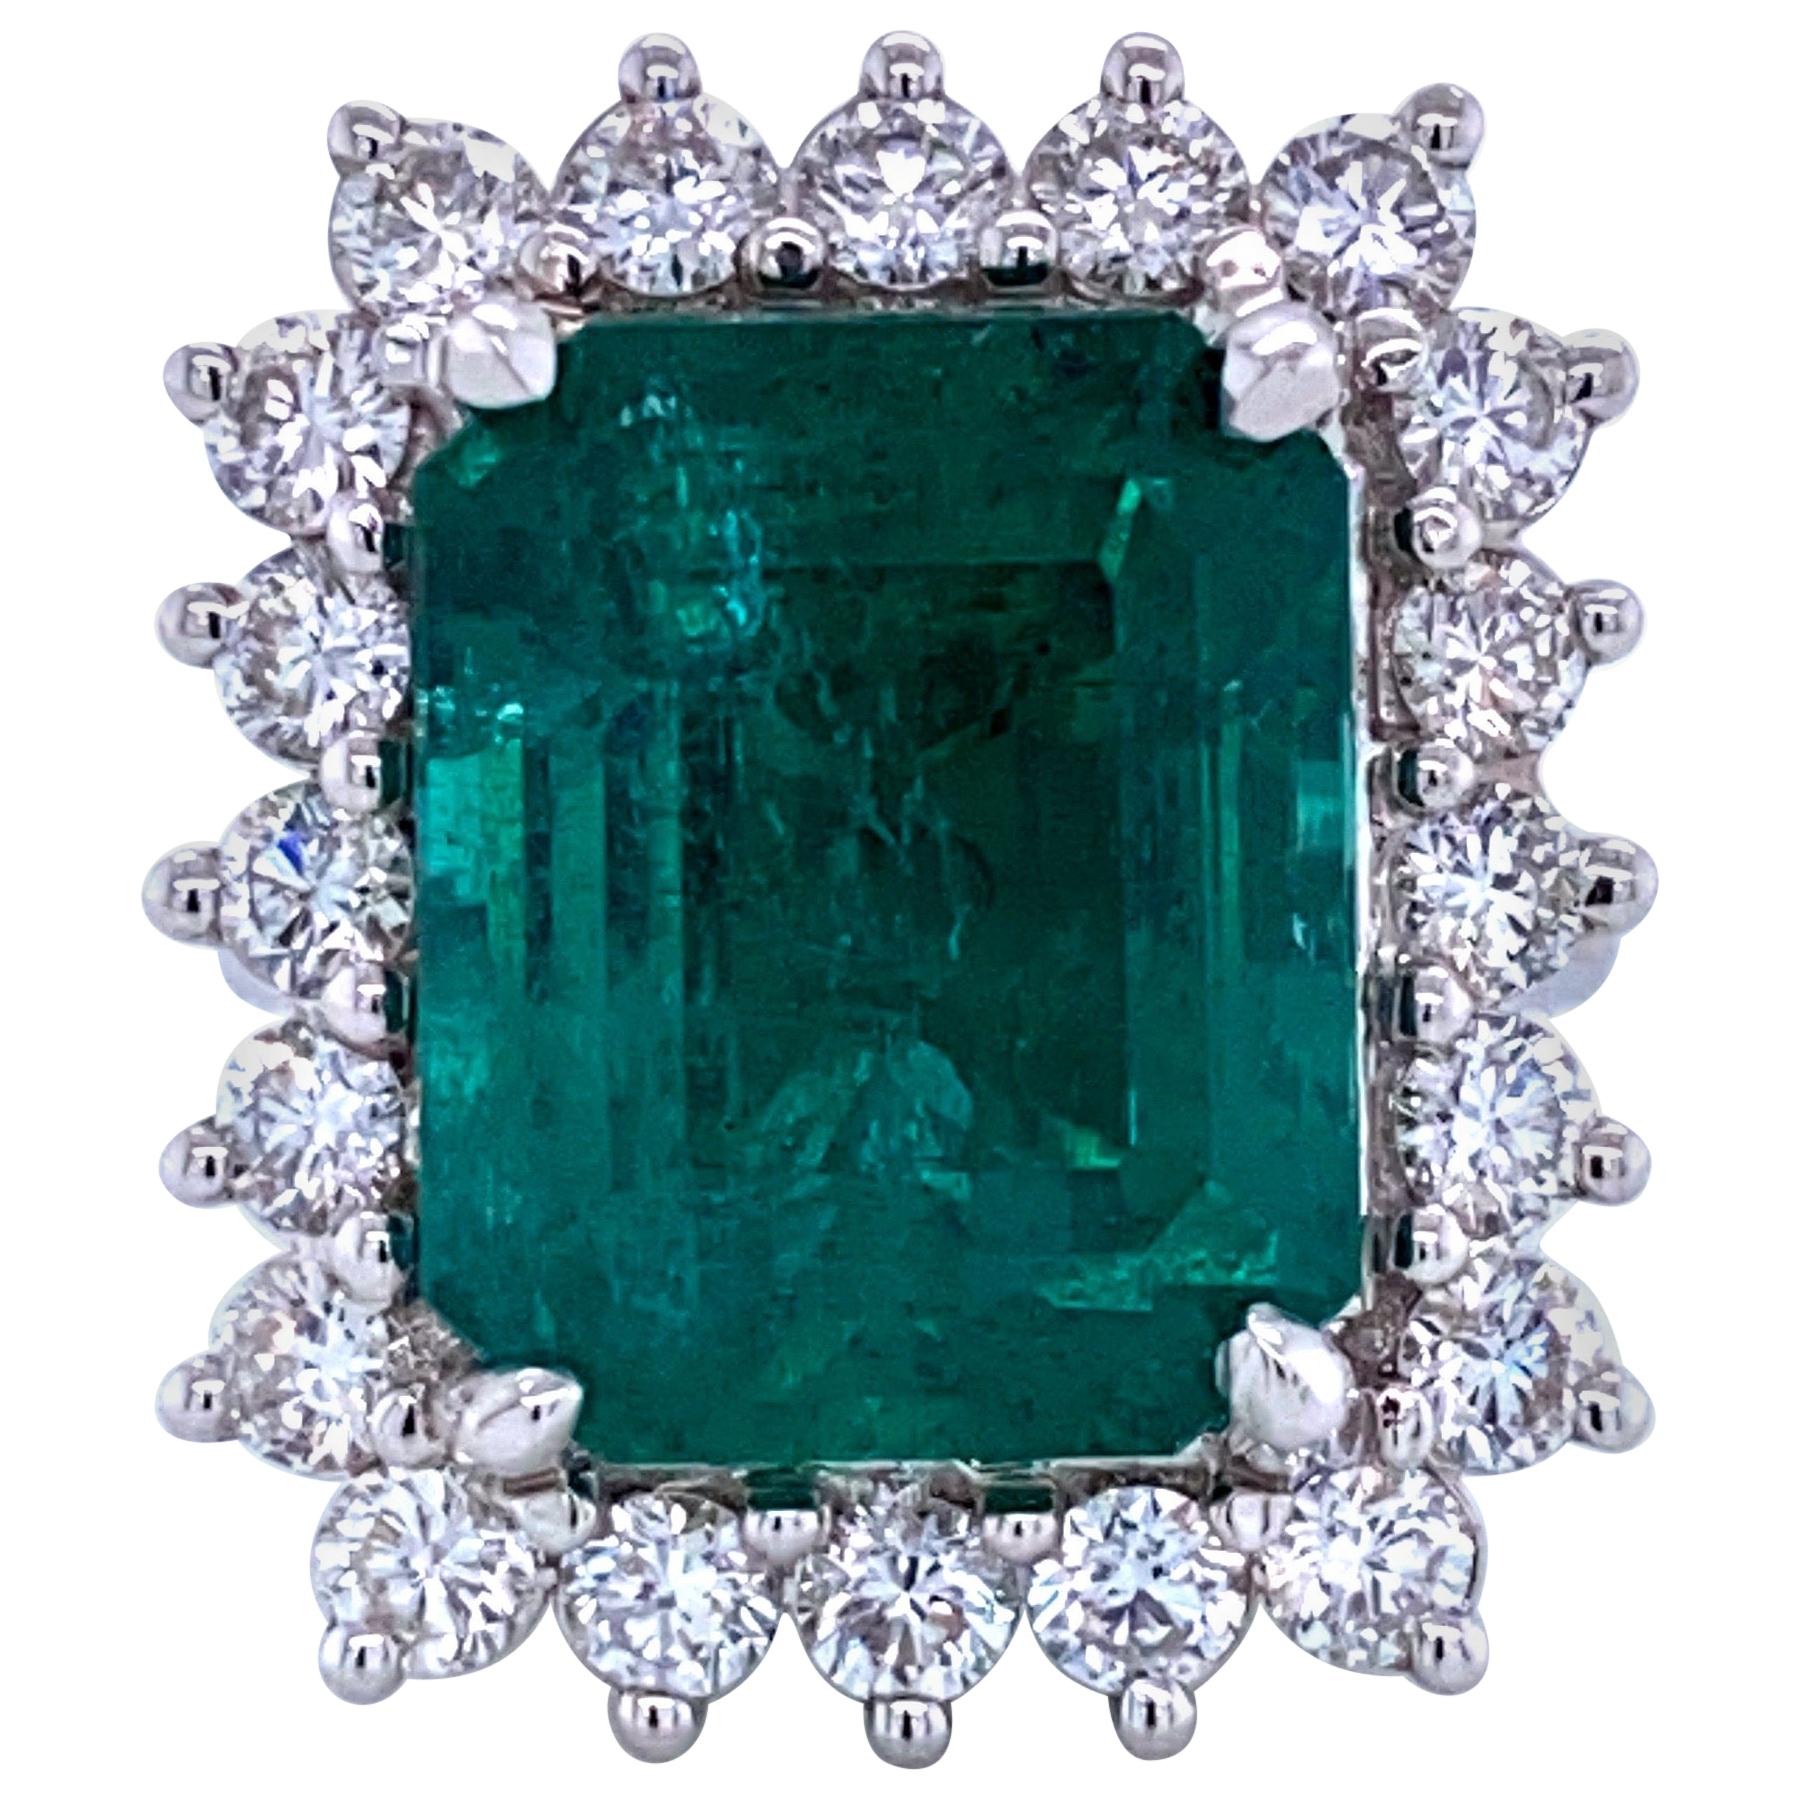 Green Emerald Cut Diamond Cocktail Ring 14.45 Carat 18 Karat White Gold